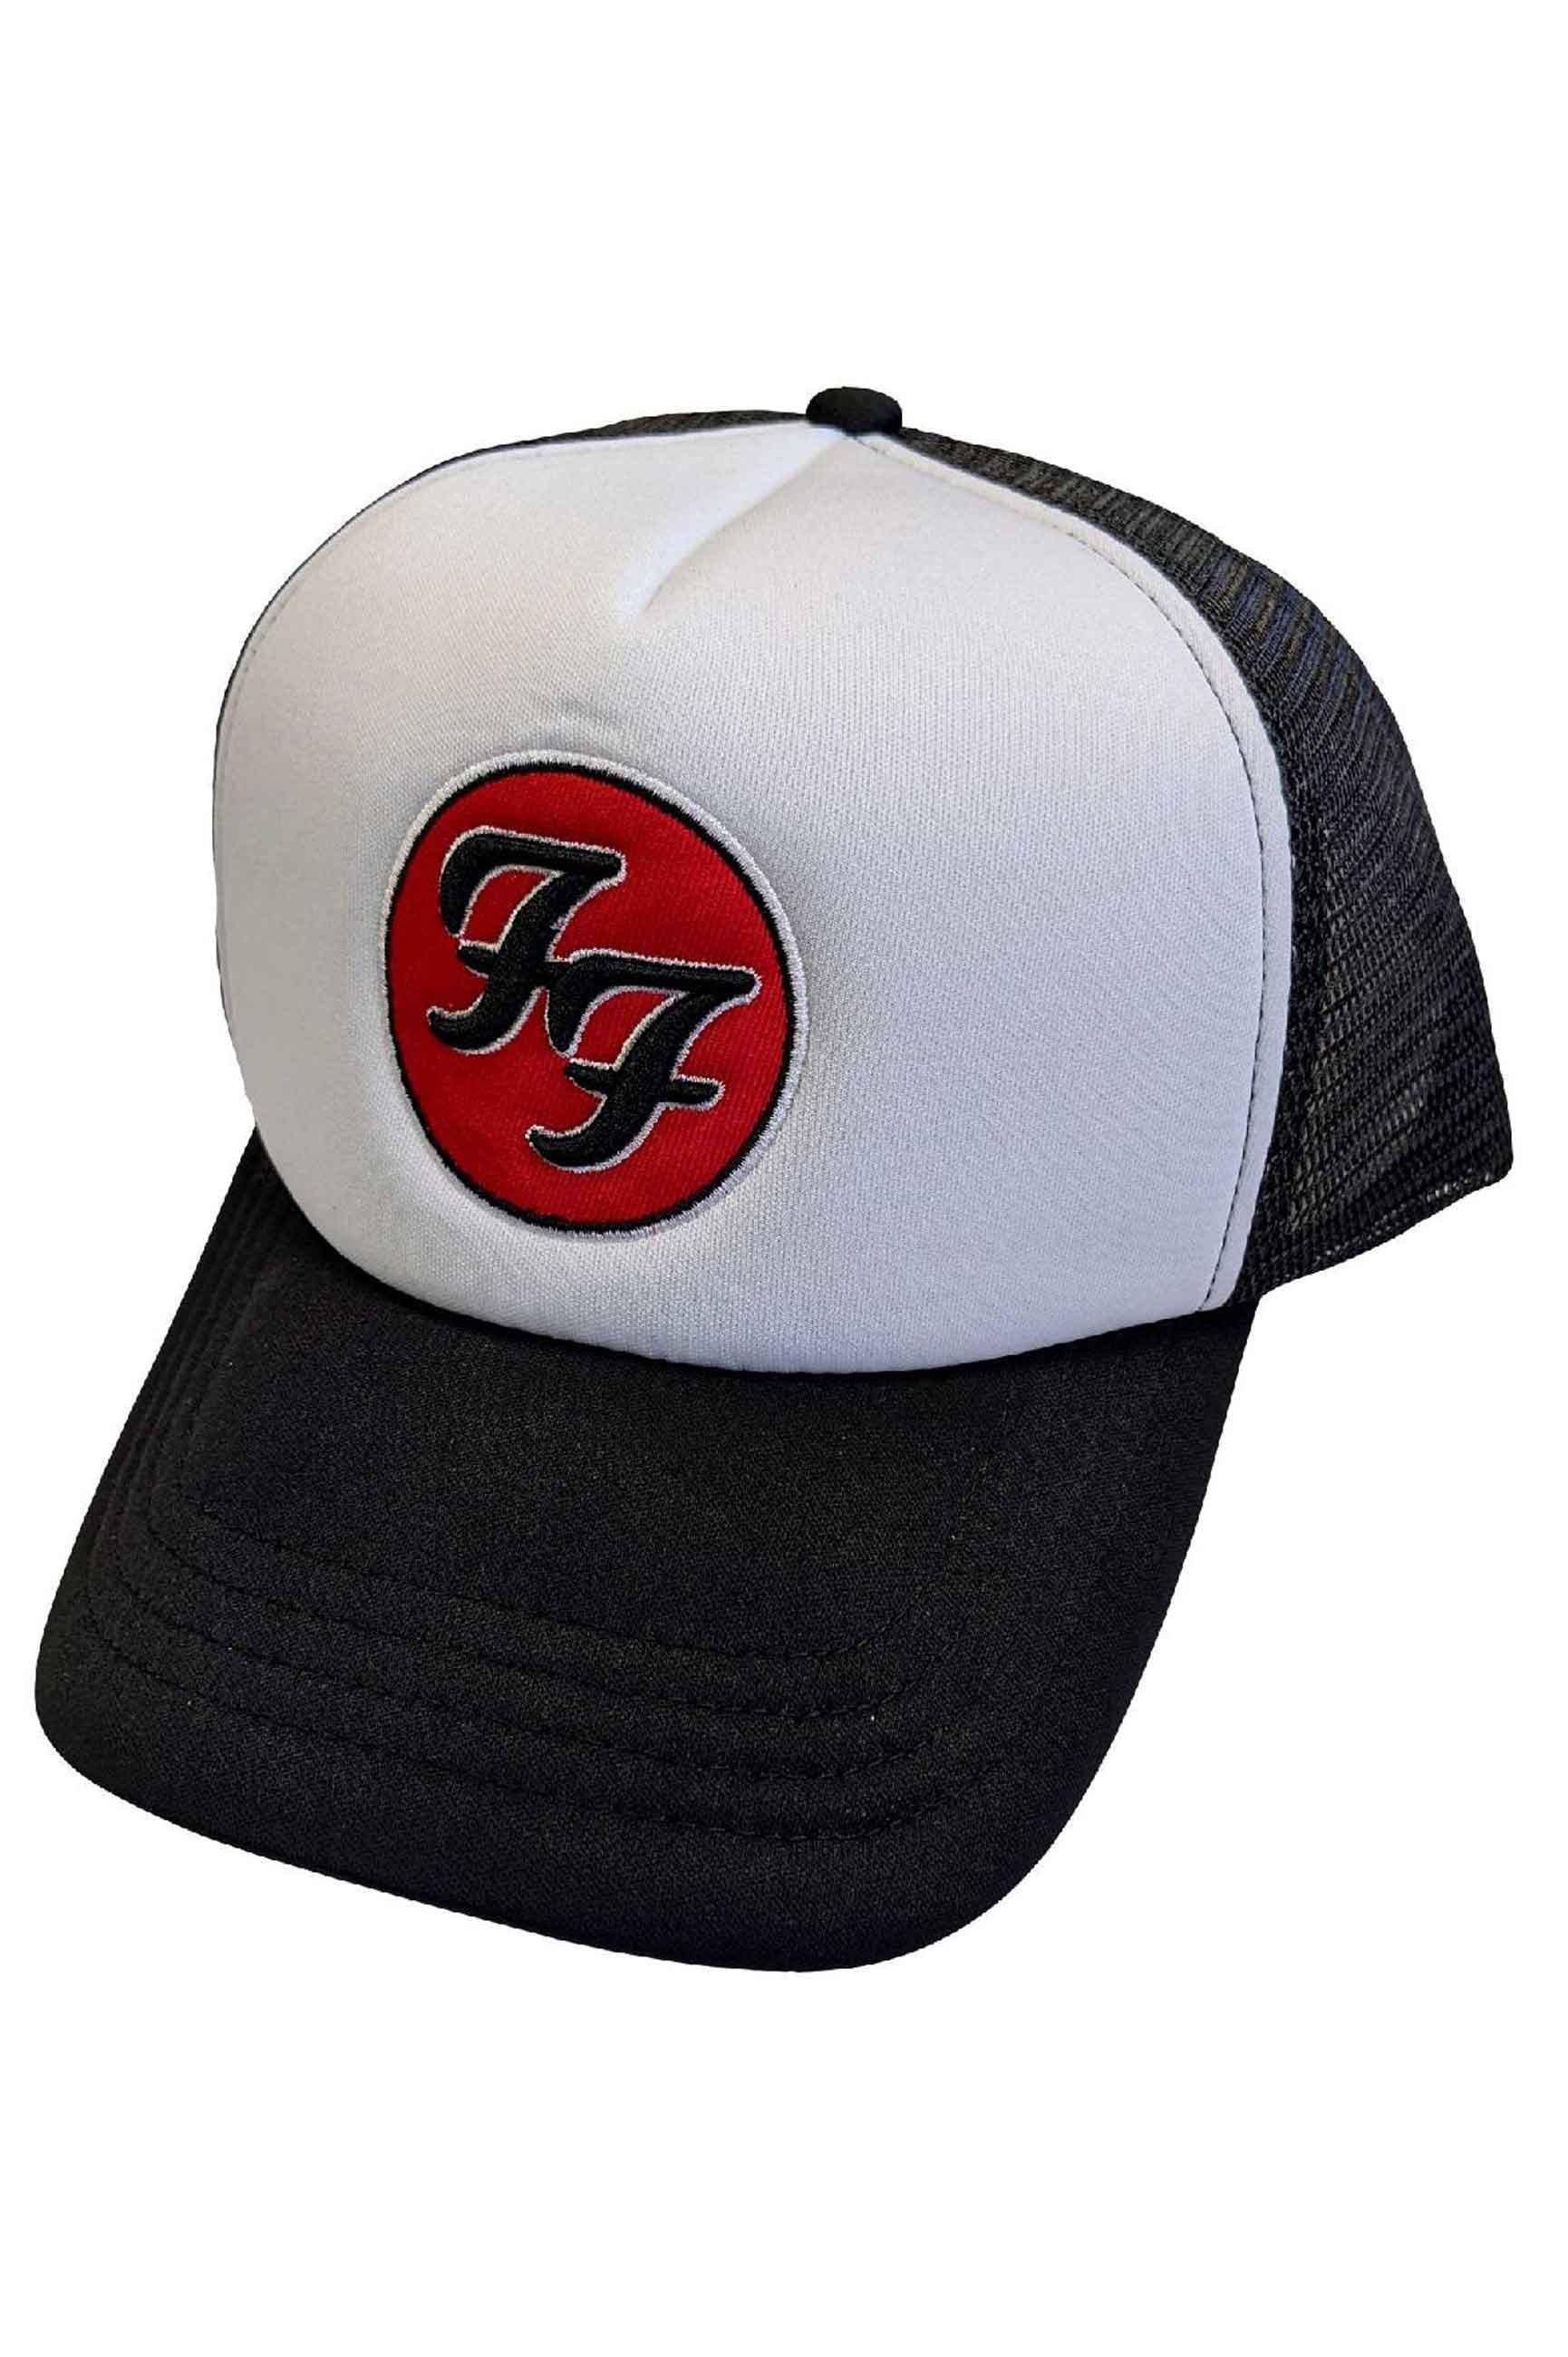 Бейсбольная кепка Trucker с логотипом FF Band Foo Fighters, черный кепка ncis с вышивкой кепка с логотипом спецагентов кепка с логотипом военно морской полиции кепка кино кепка регулируемая бейсболка кепка